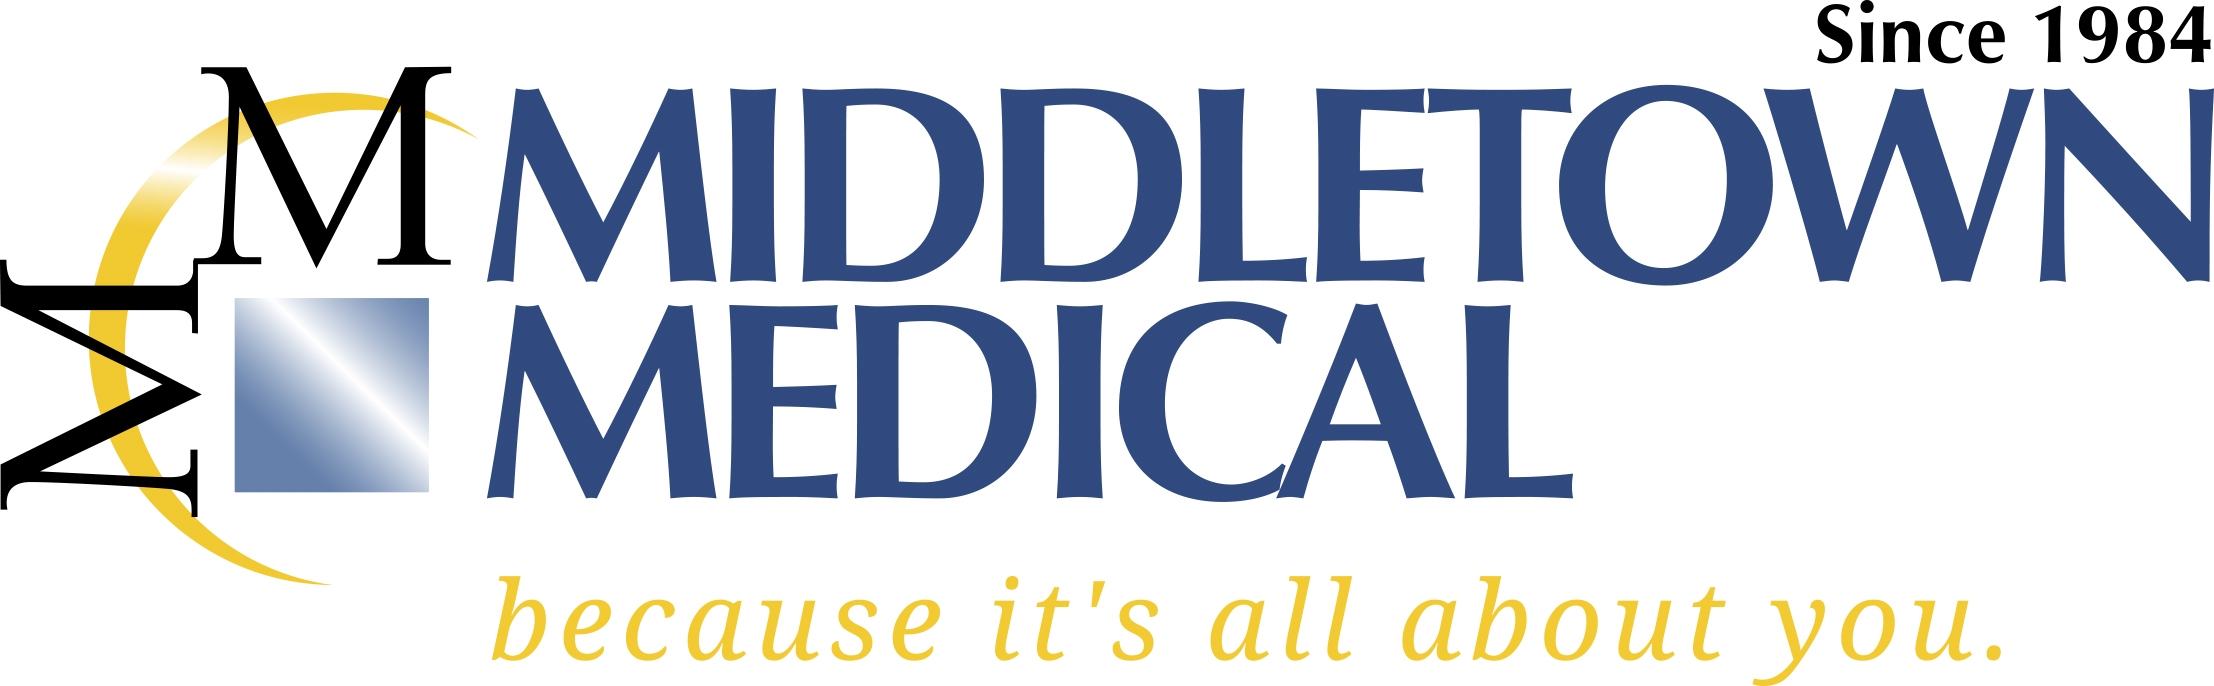 Middletown Medical